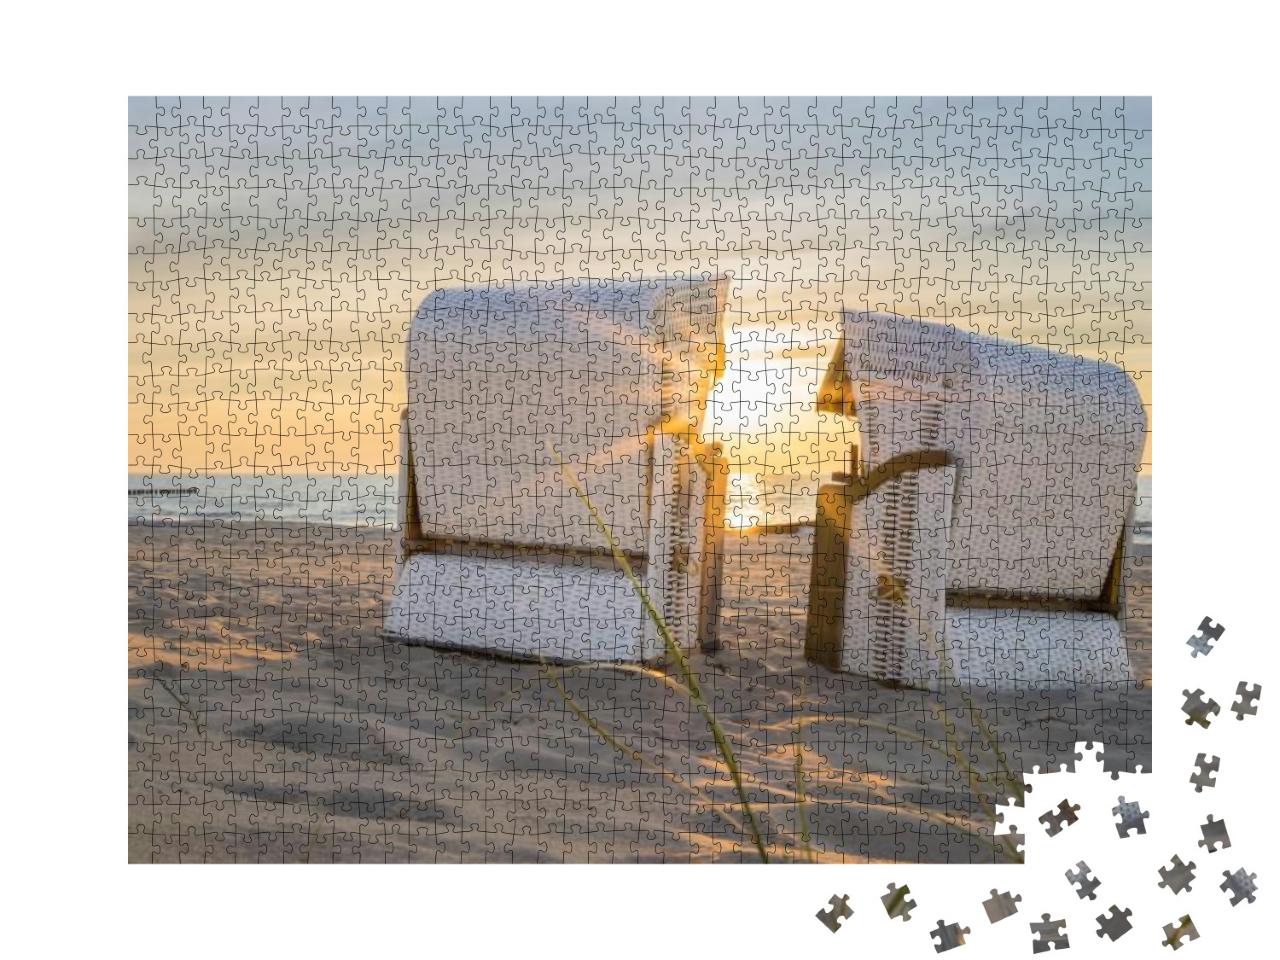 Puzzle 1000 Teile „Sonnenuntergang an der Ostsee mit zwei Strandkörben“